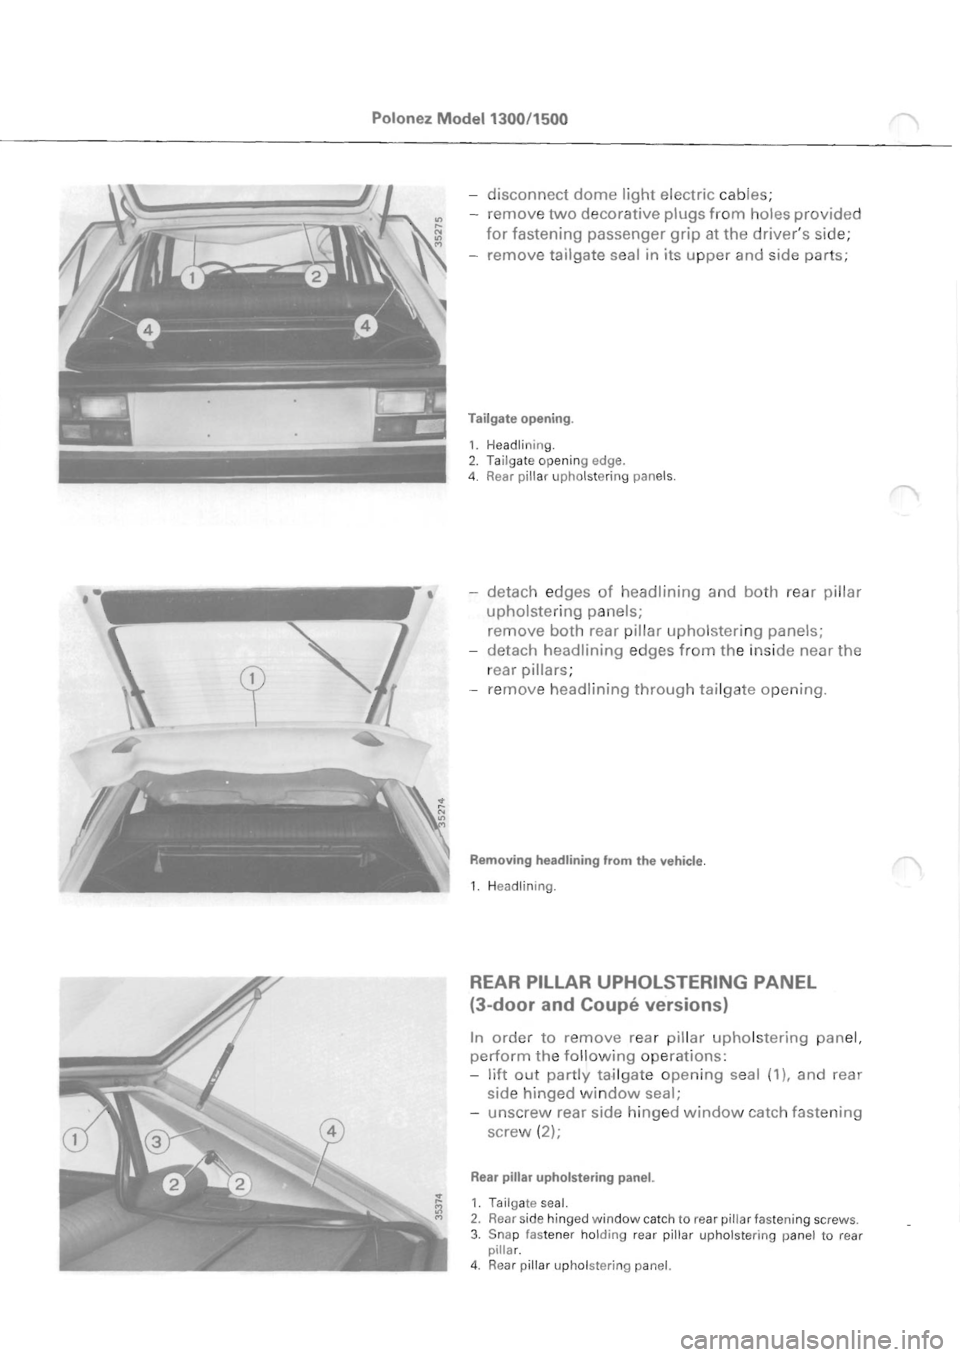 POLONEZ FSO 1300 1978  Repair Manual 